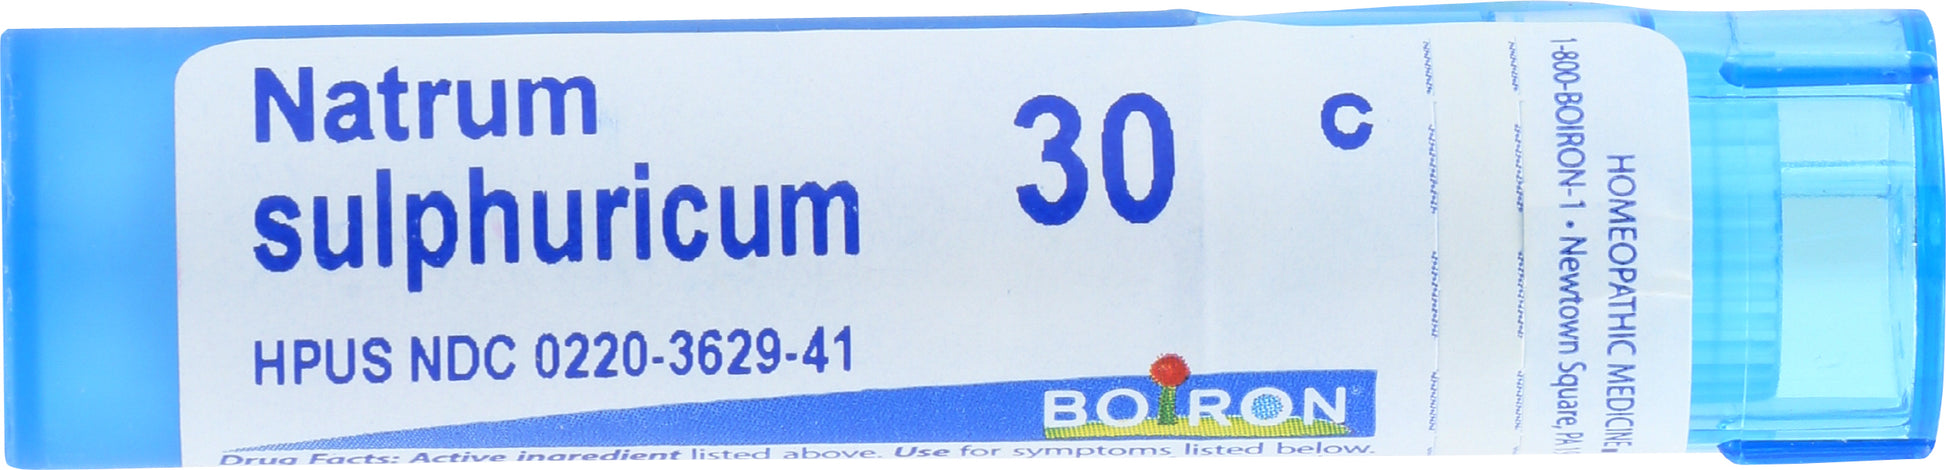 Boiron Natrum sulphuricum 30c